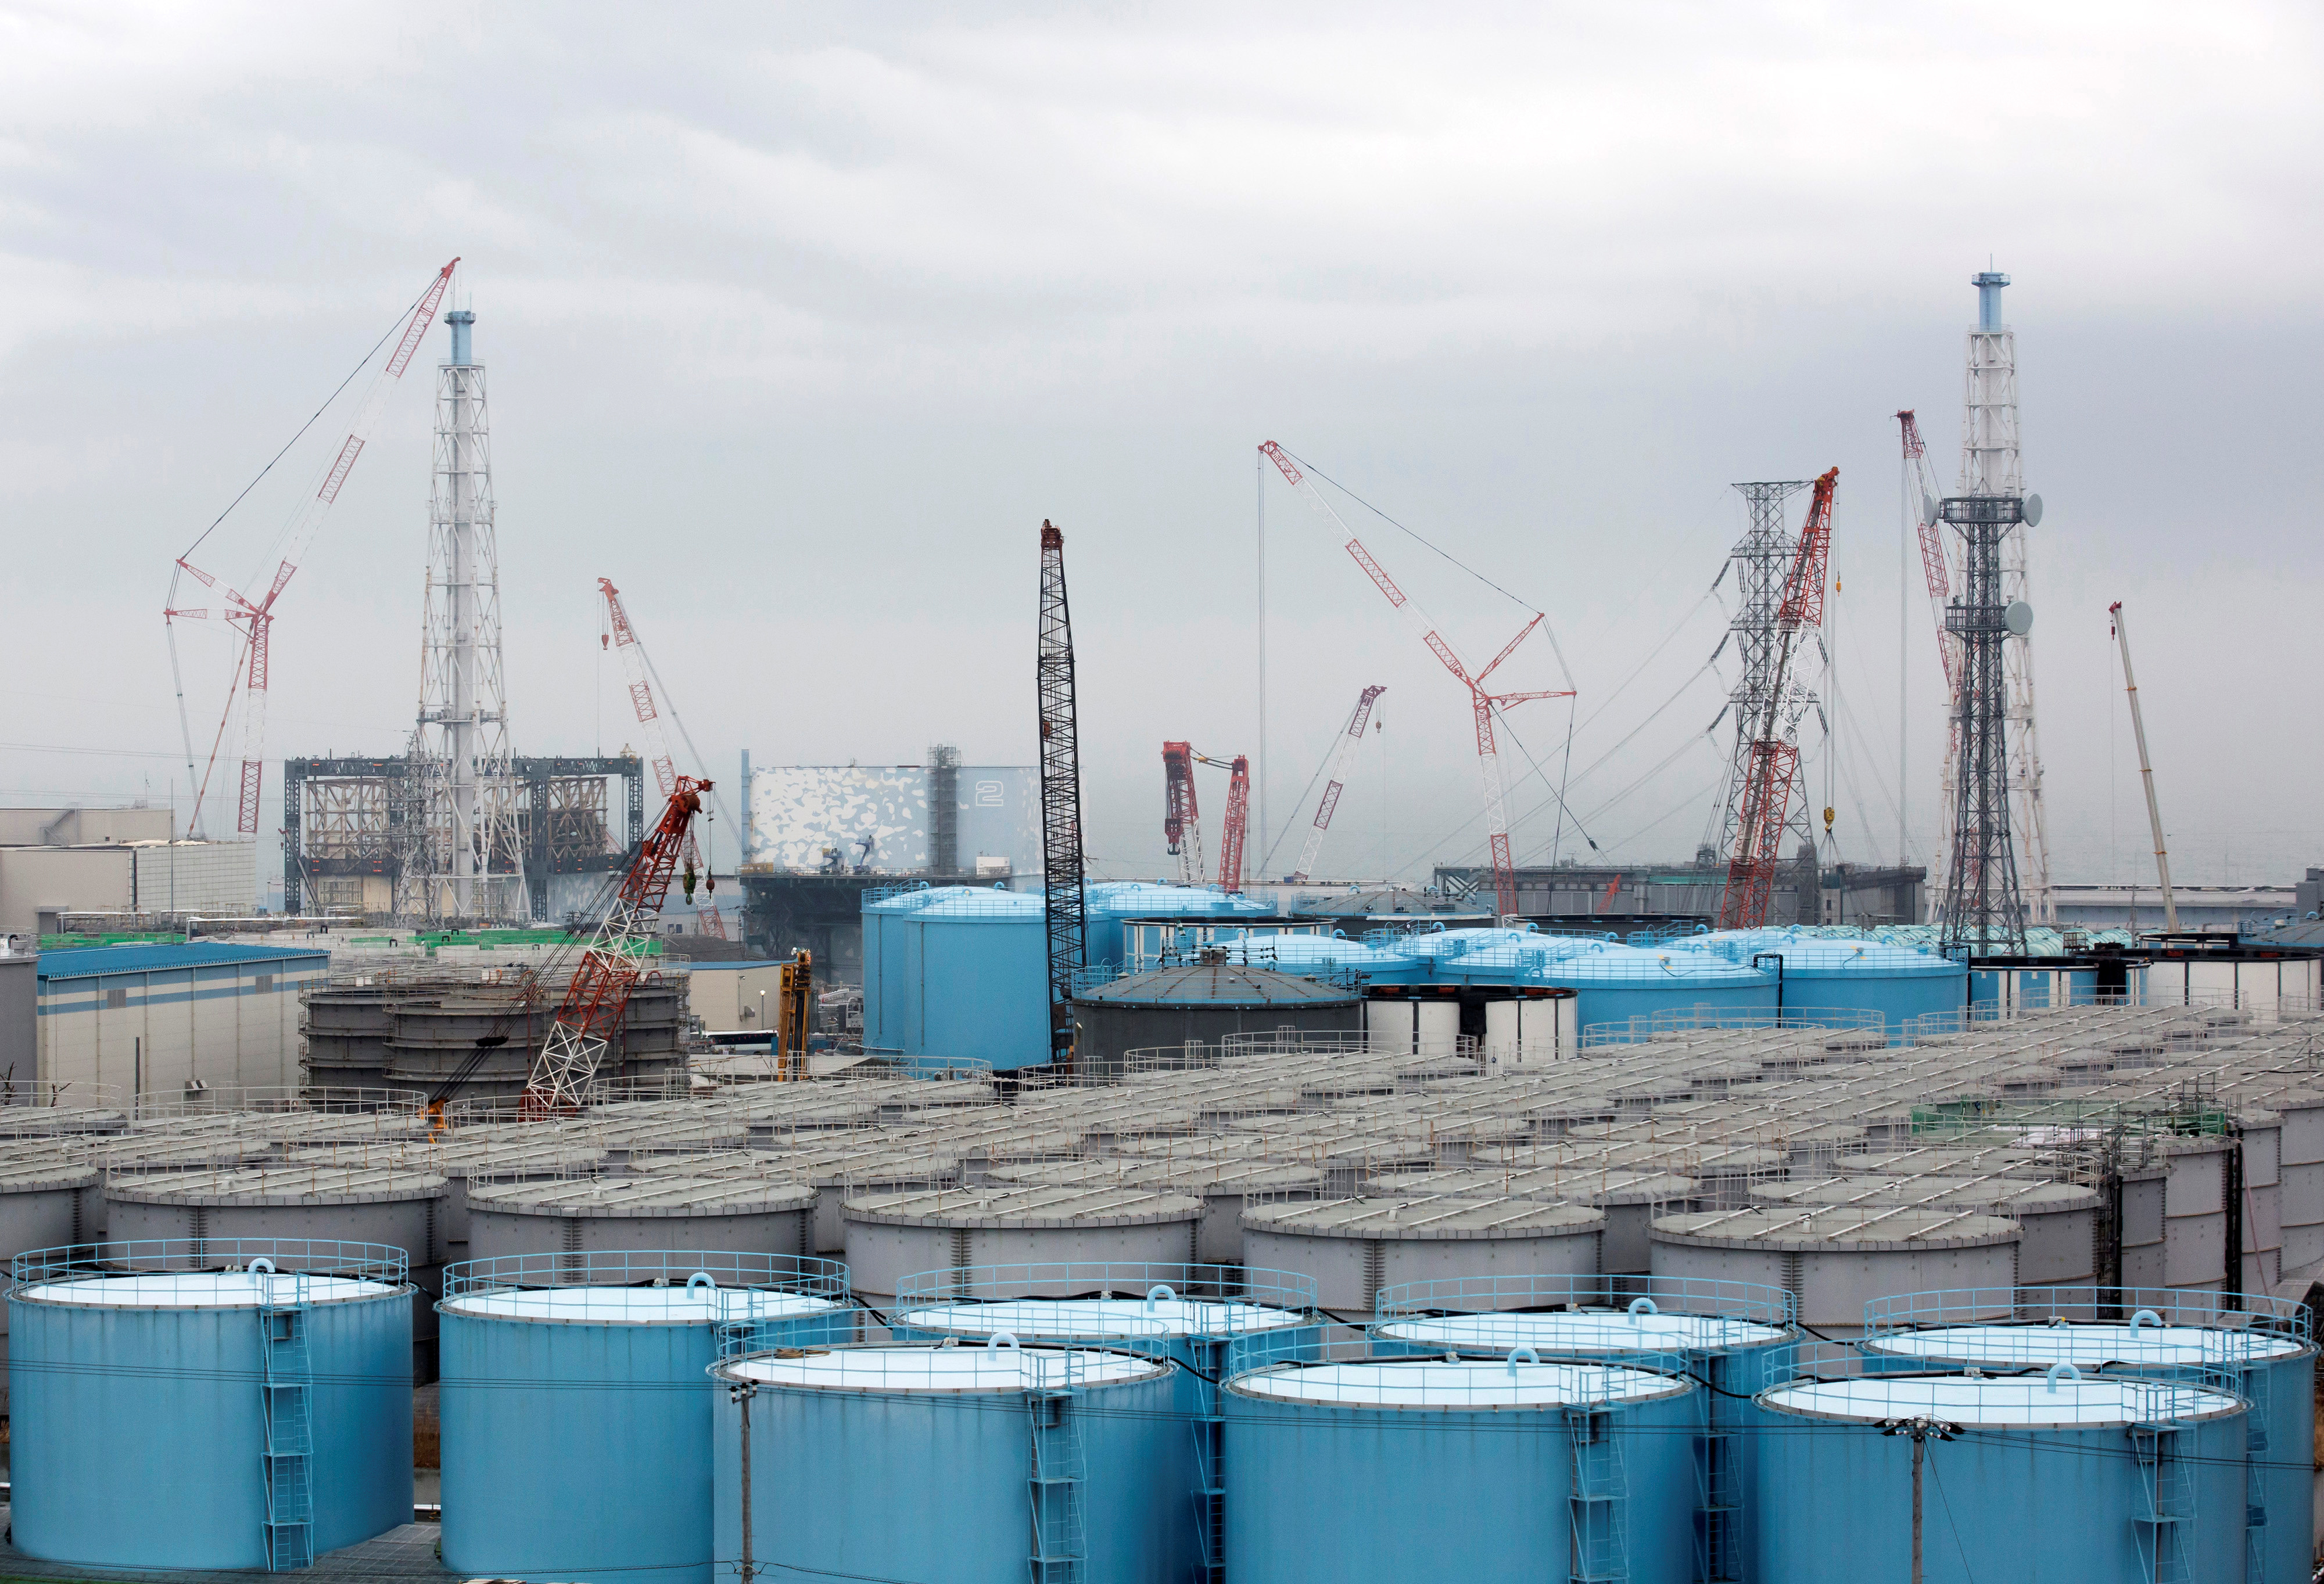 Storage tanks for contaminated water stand at TEPCO's Fukushima Dai-ichi nuclear power plant in Okuma, Fukushima